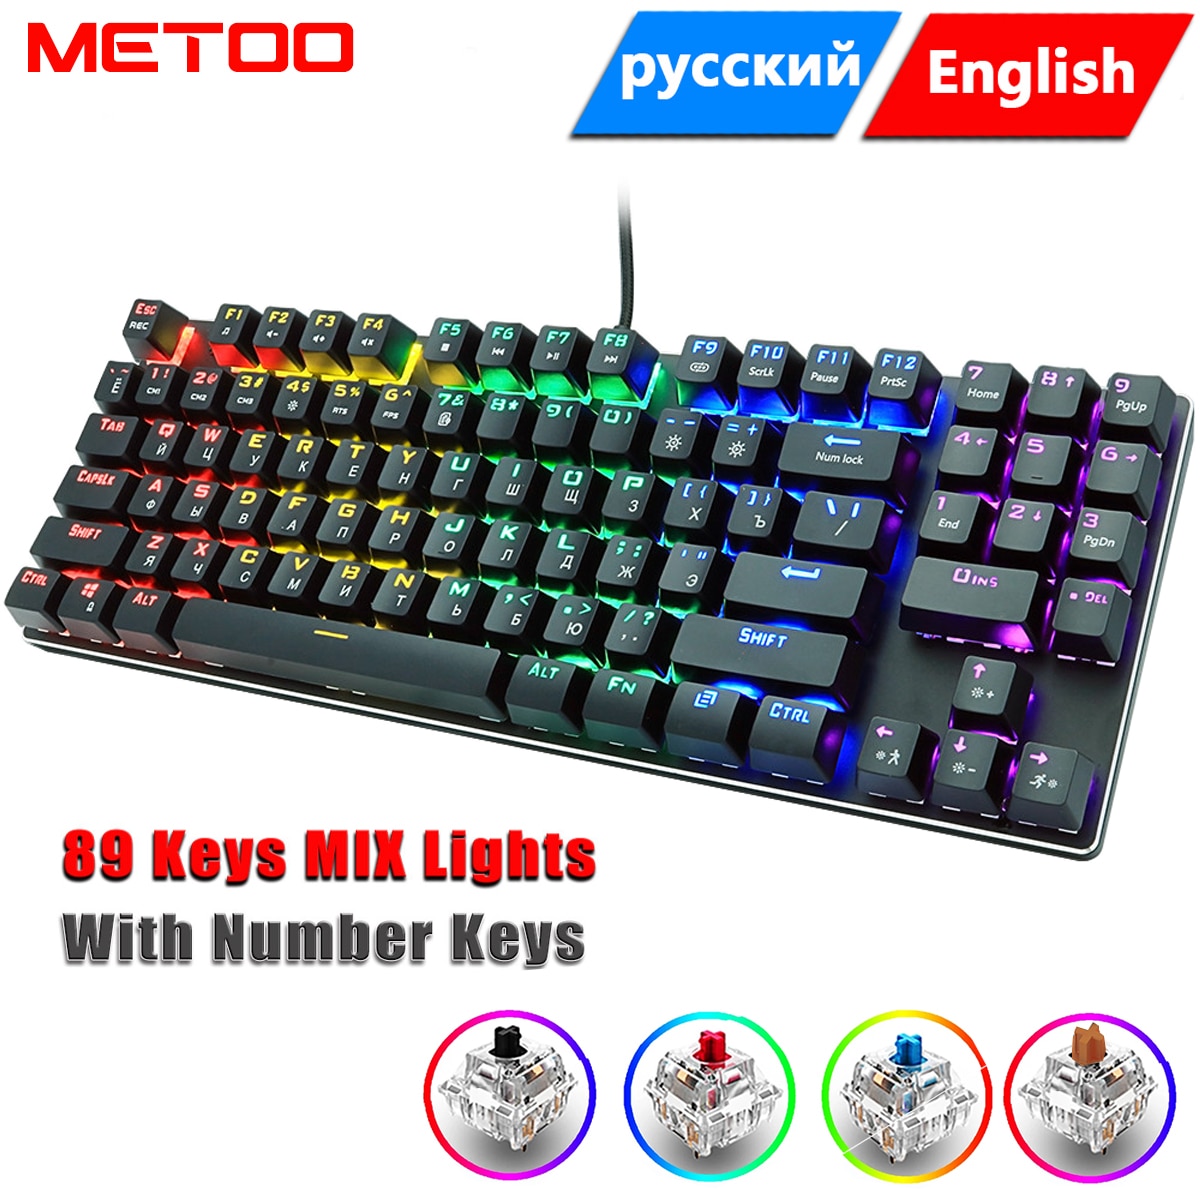 Metoo-teclado mecânico com fio 89 teclas, teclado retroiluminado, anti-ghosting, azul, vermelho, marrom,...